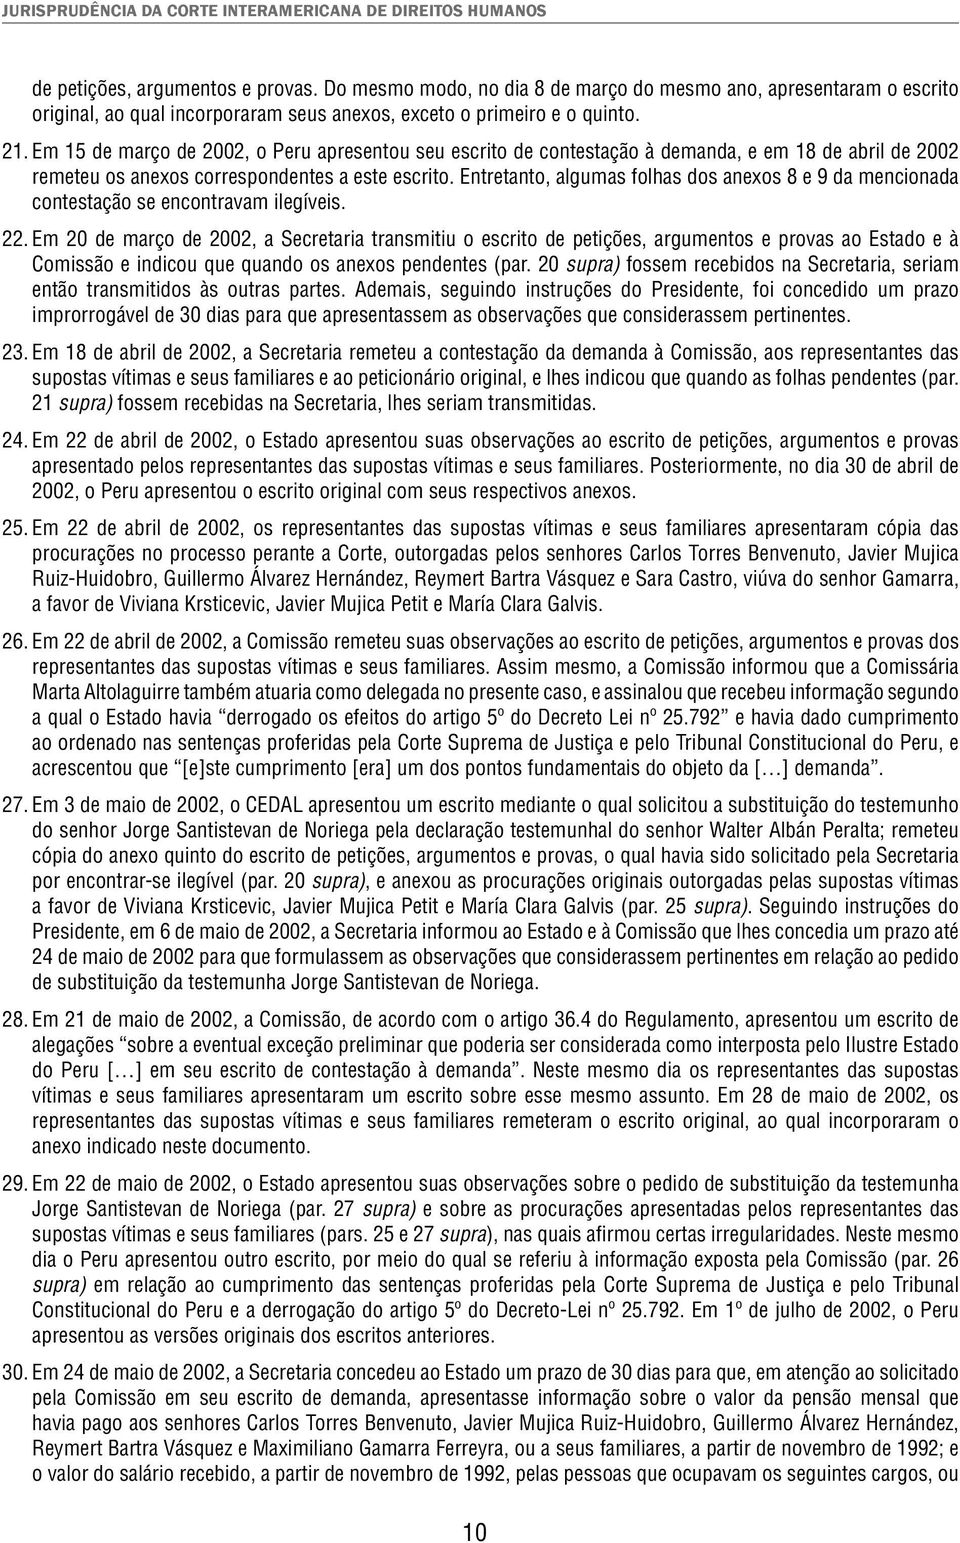 Em 15 de março de 2002, o Peru apresentou seu escrito de contestação à demanda, e em 18 de abril de 2002 remeteu os anexos correspondentes a este escrito.